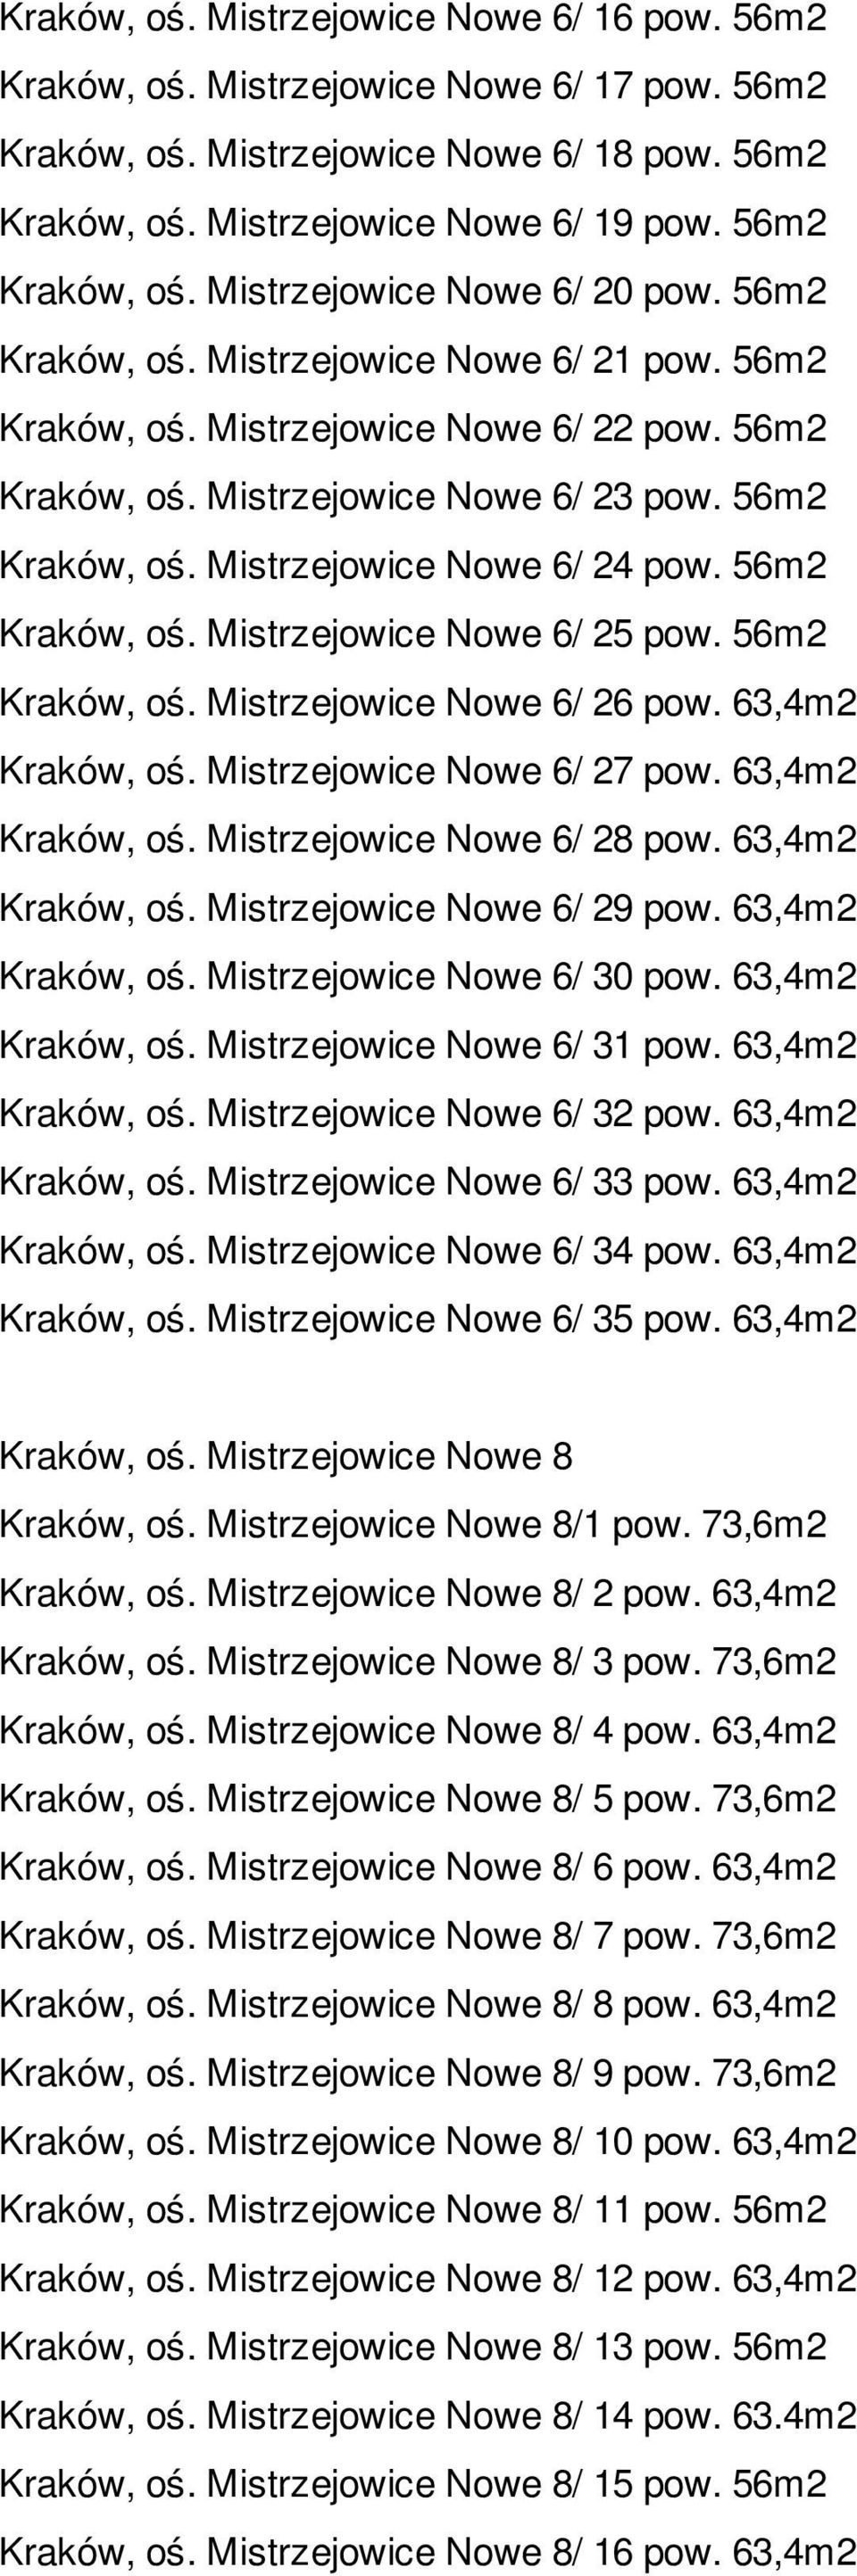 56m2 Kraków, oś. Mistrzejowice Nowe 6/ 25 pow. 56m2 Kraków, oś. Mistrzejowice Nowe 6/ 26 pow. 63,4m2 Kraków, oś. Mistrzejowice Nowe 6/ 27 pow. 63,4m2 Kraków, oś. Mistrzejowice Nowe 6/ 28 pow.